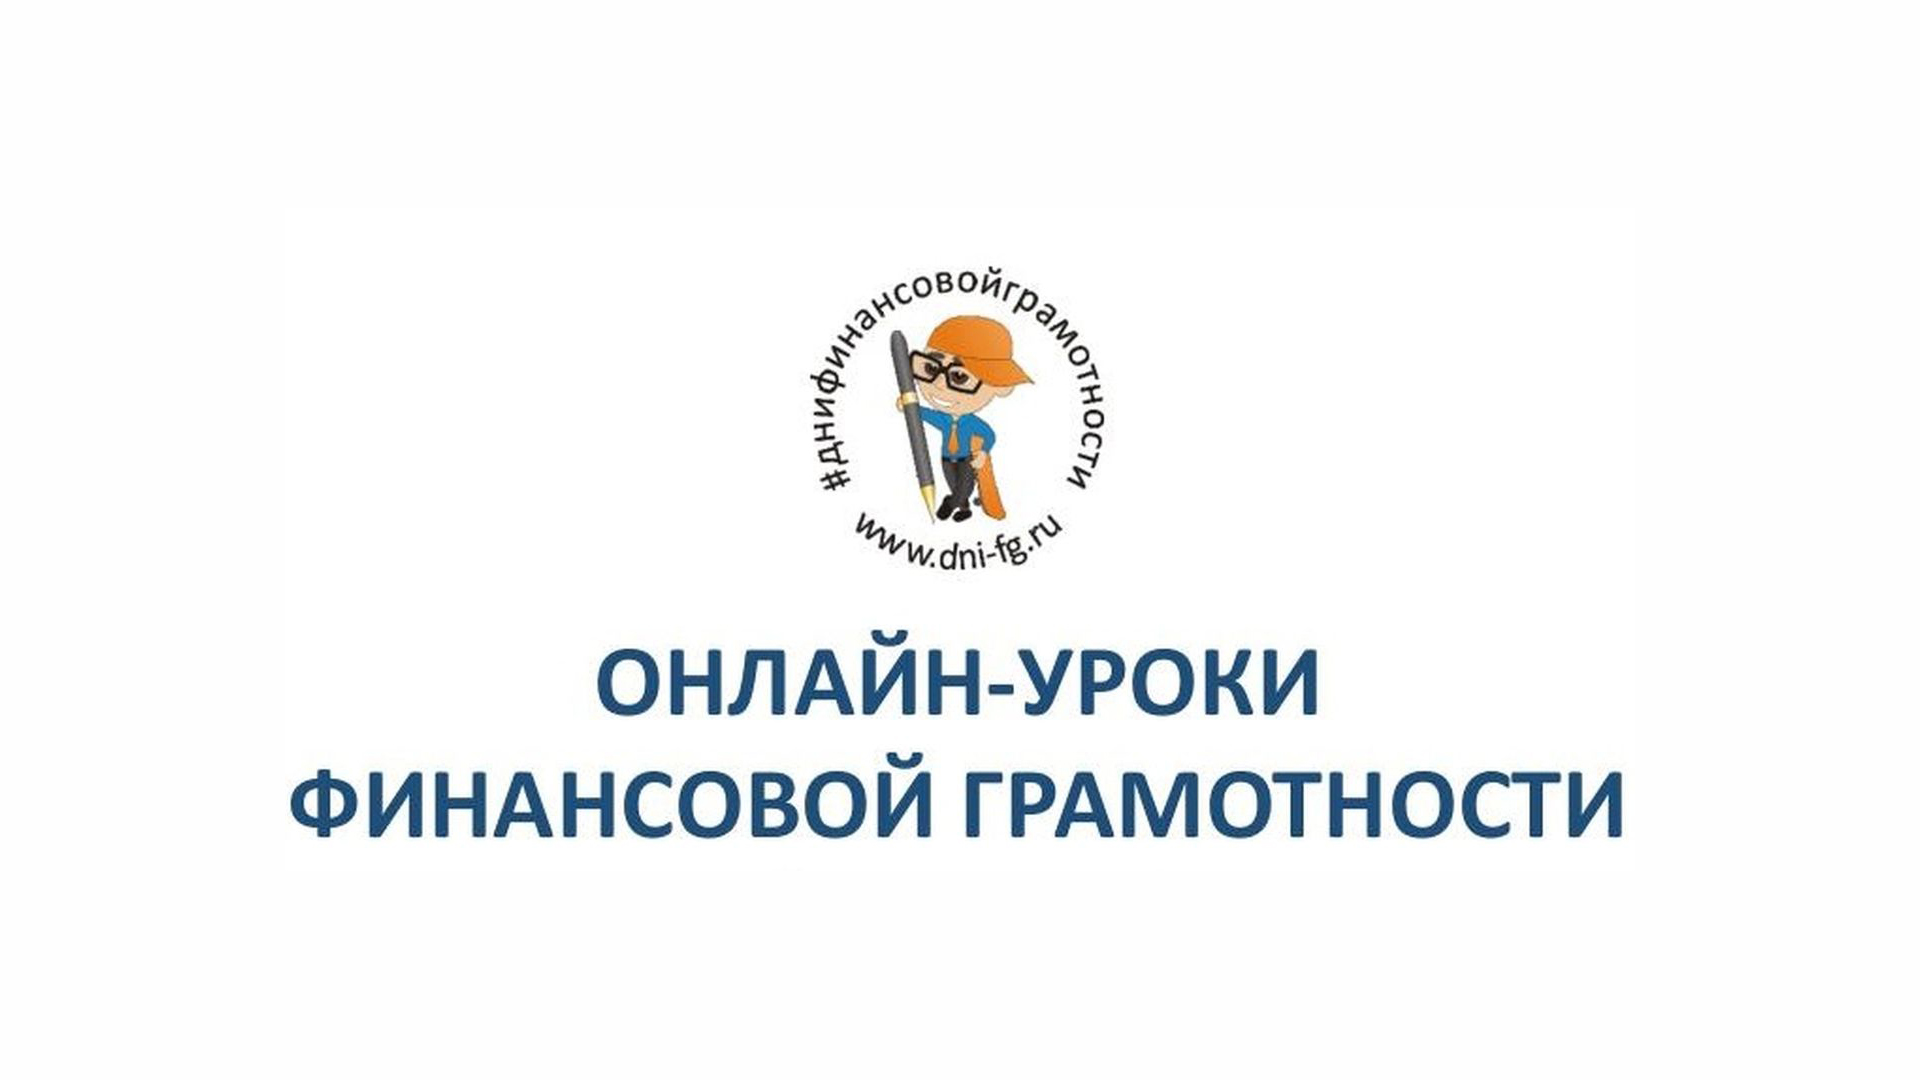 Банк России приглашает томских школьников и студентов на онлайн-уроки по финансовой грамотности